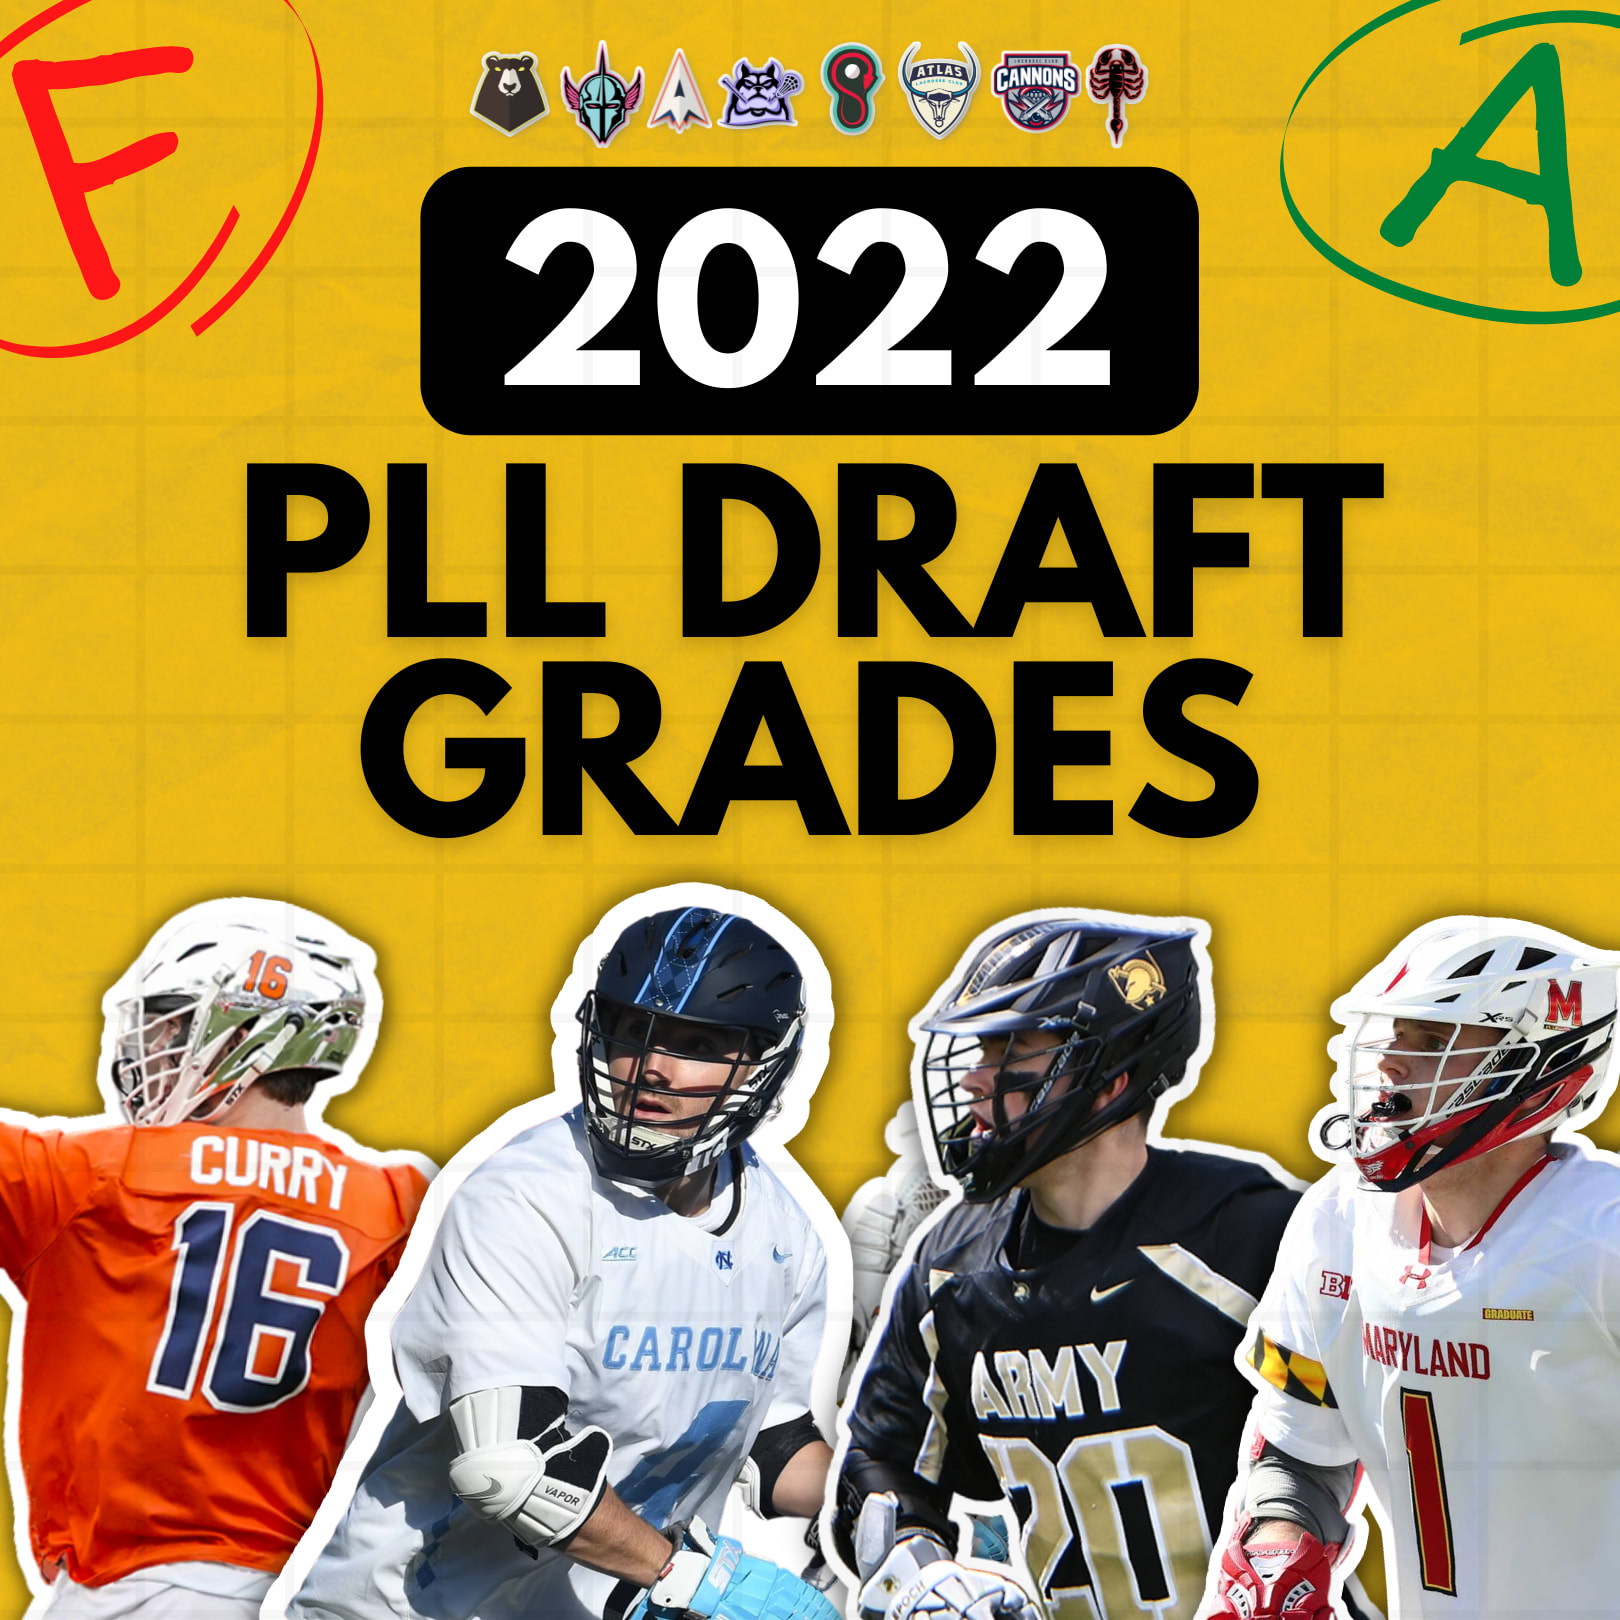 draft grades 2022 team